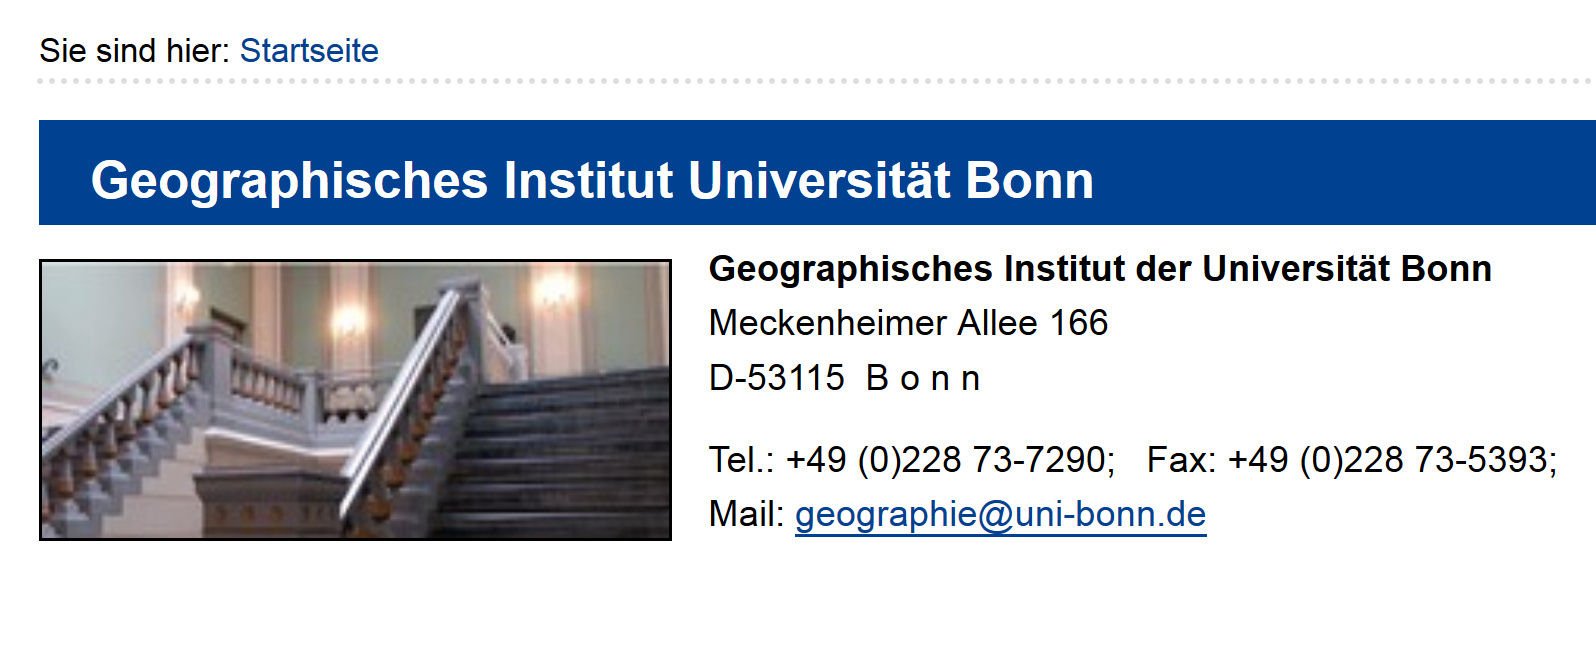 Abb. Ausschnitt aus der Website des Geographischen Instituts der Universität Bonn